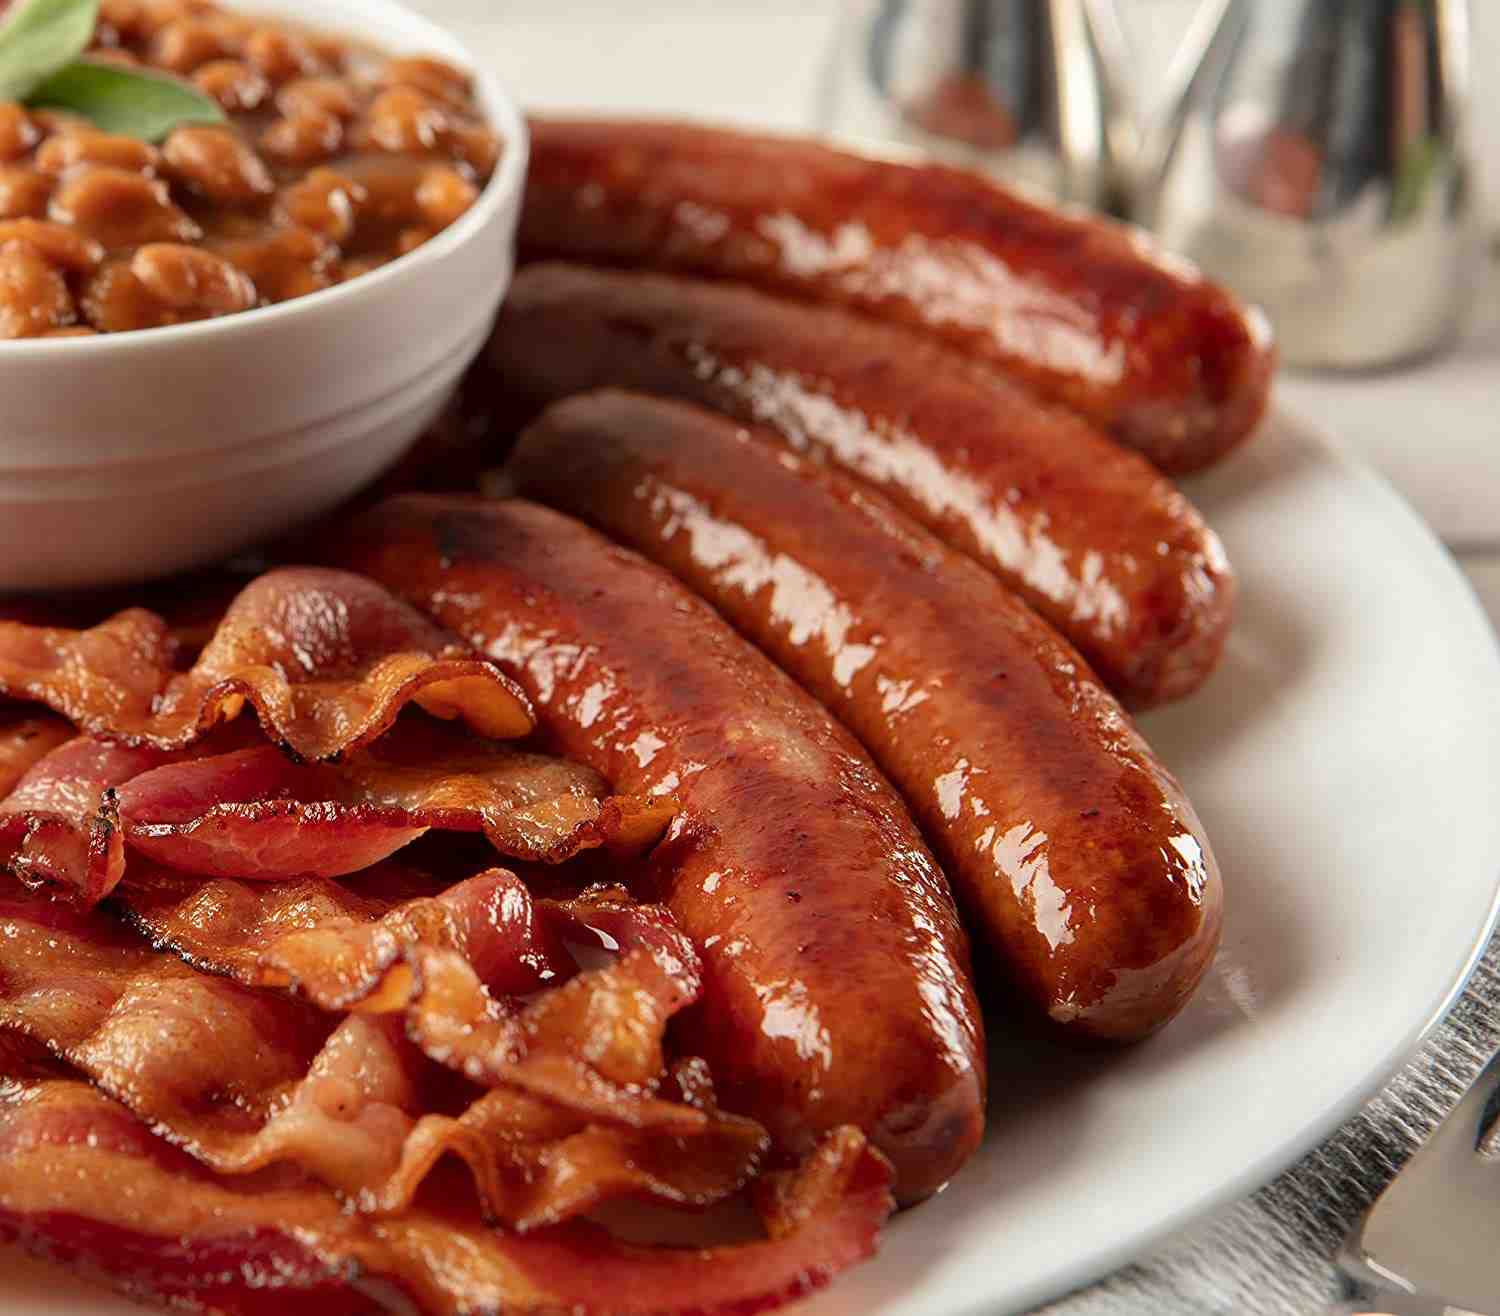 Are Polish sausages actually Polish?